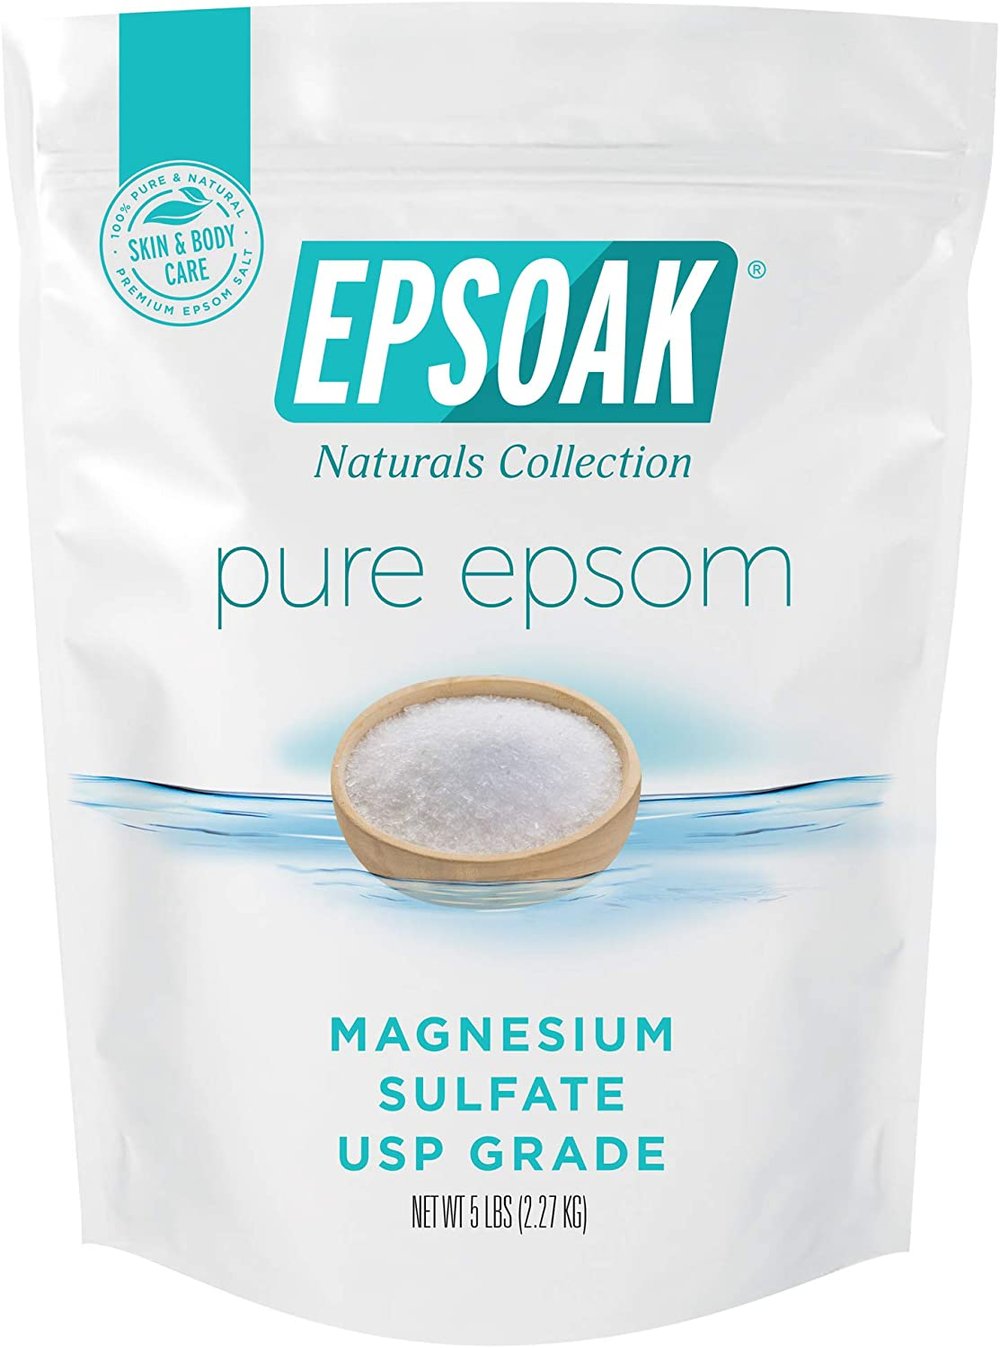 A bag of Epsoak brand epsom salt